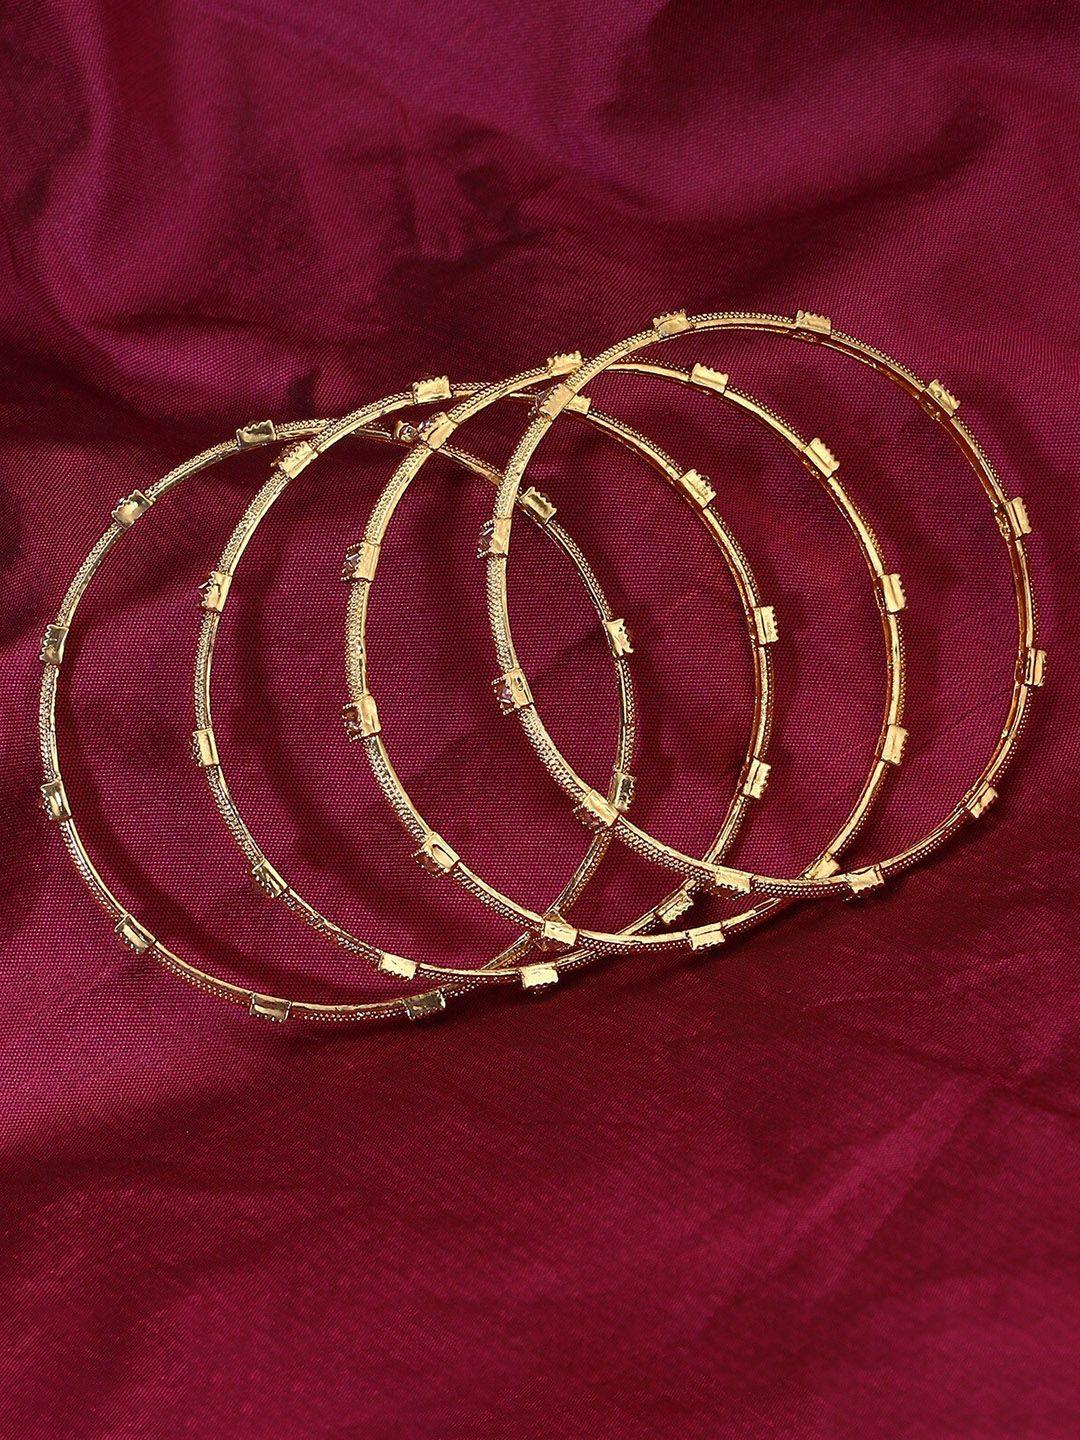 adwitiya collection set of 4 gold-plated stone-studded bangles